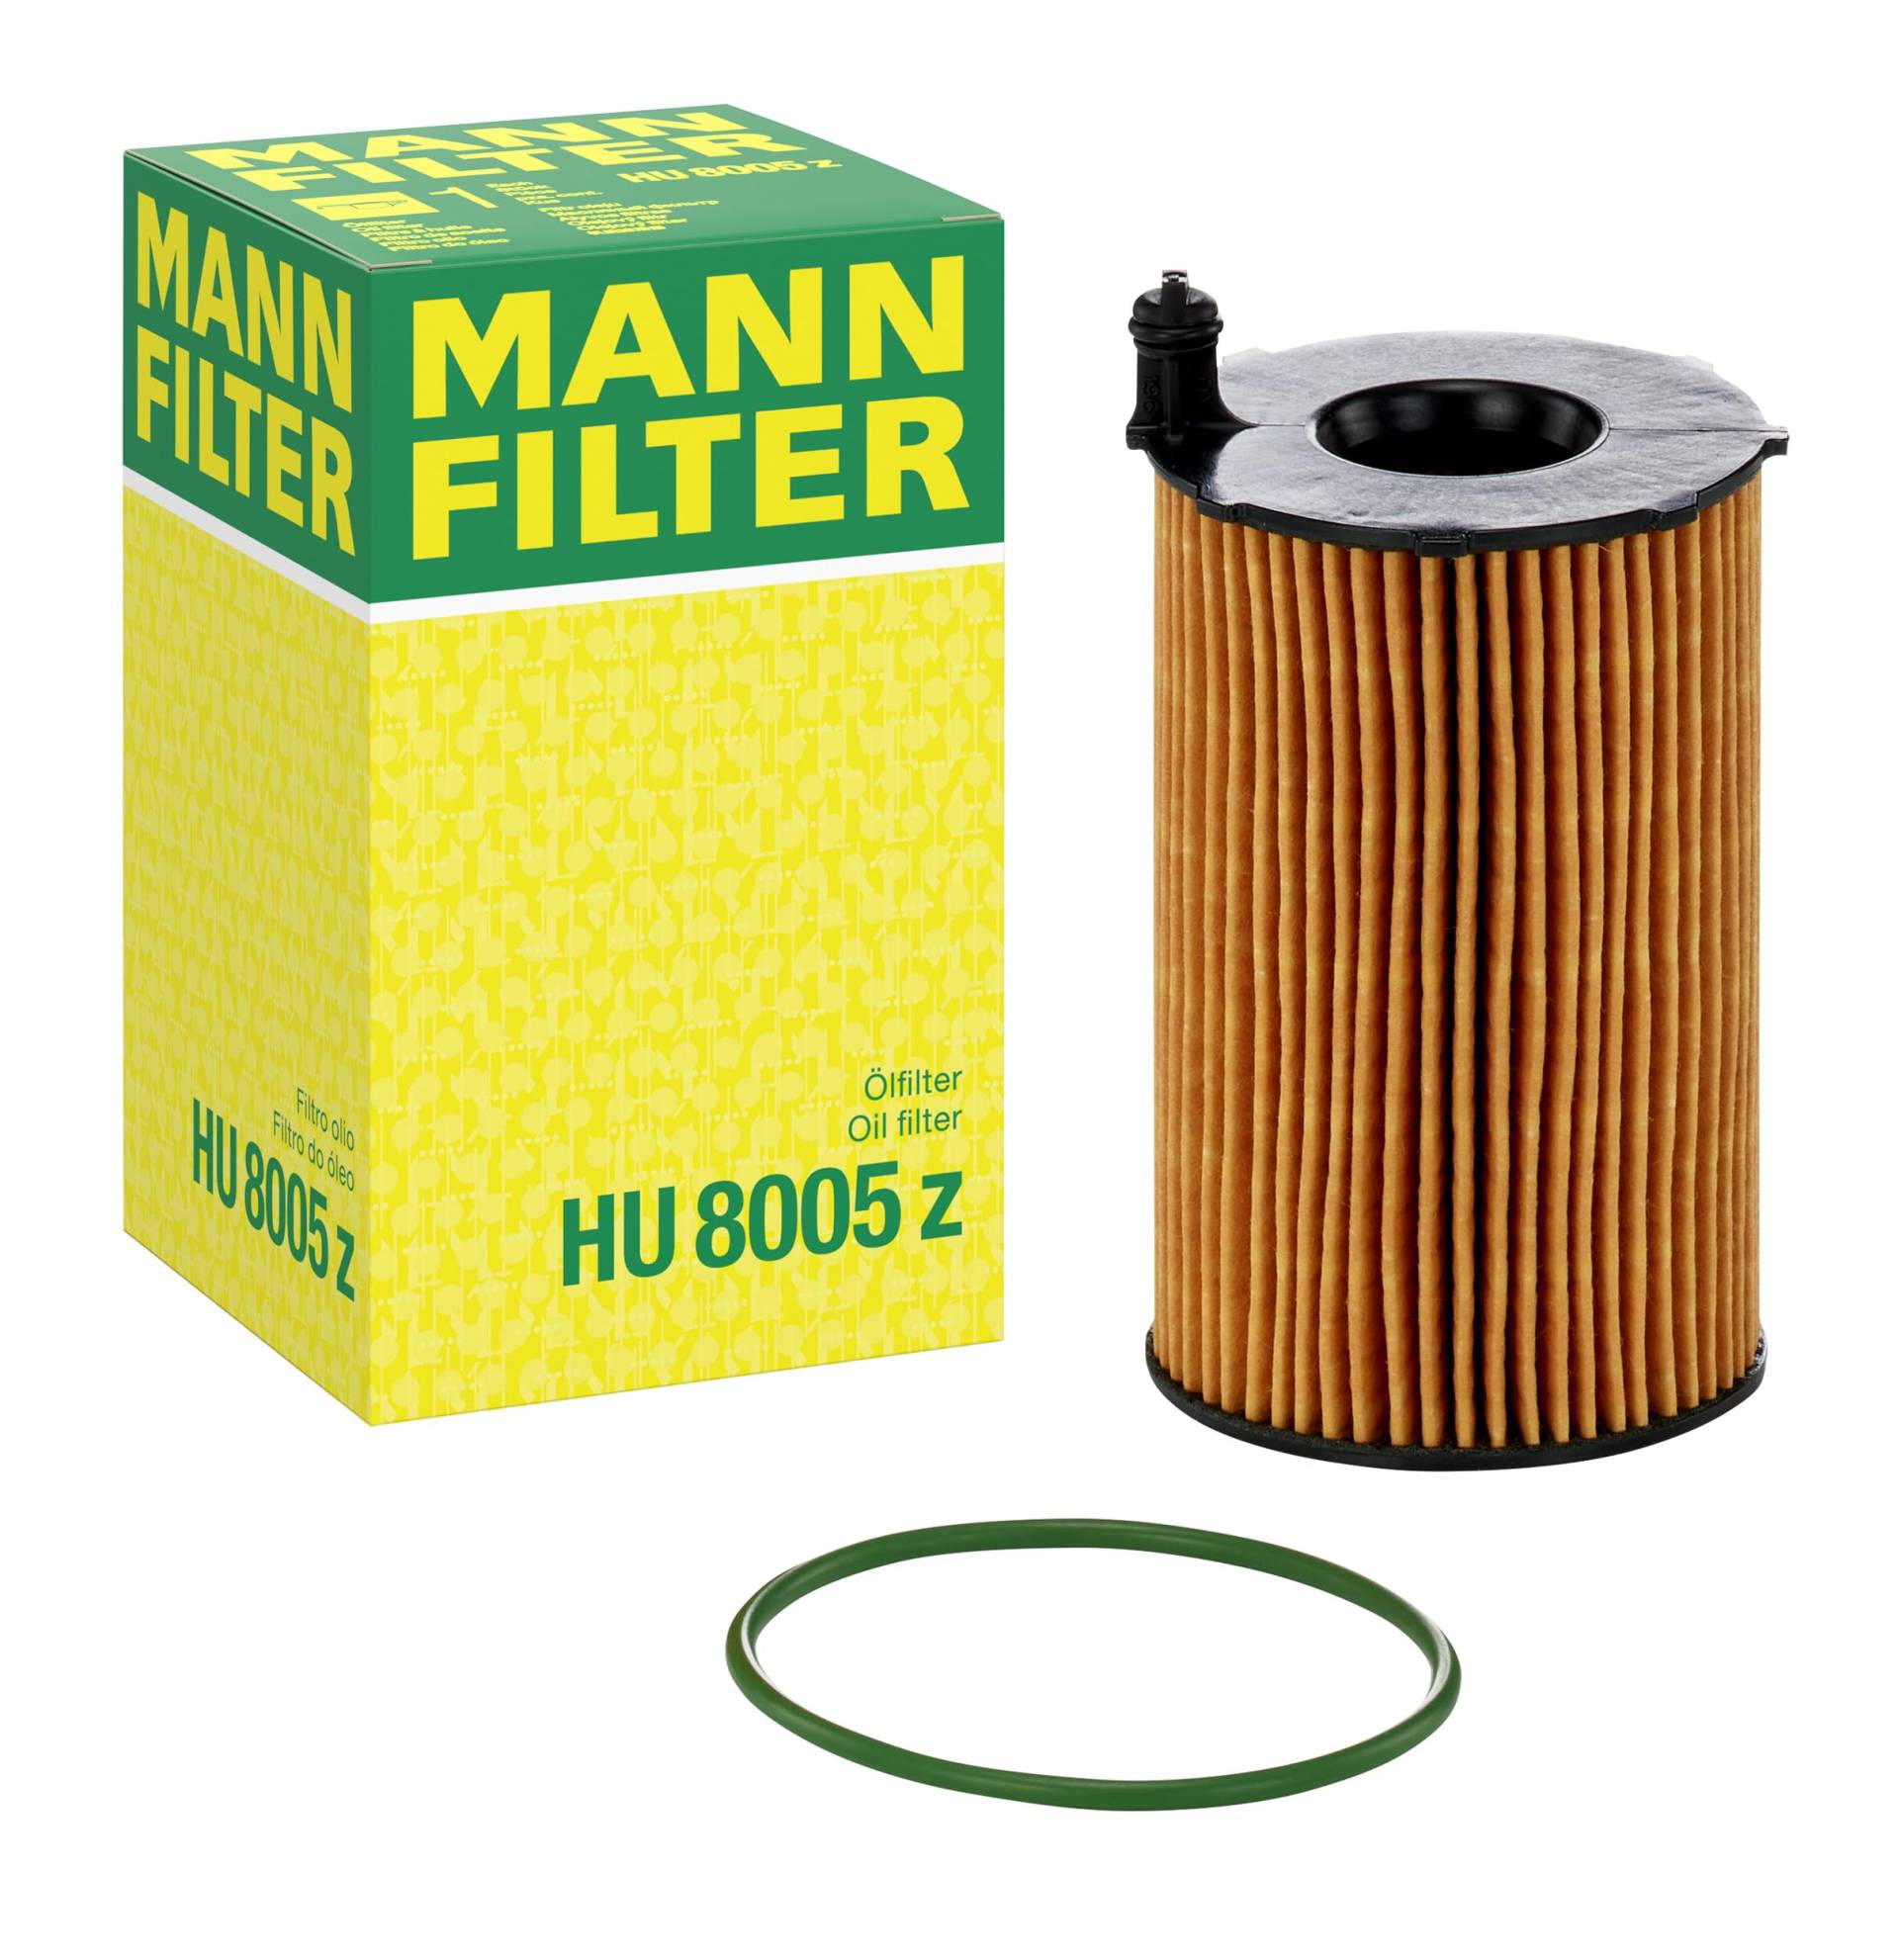 MANN-FILTER HU 8005 Z Ölfilter – Ölfilter Satz mit Dichtung / Dichtungssatz – Für PKW von MANN-FILTER